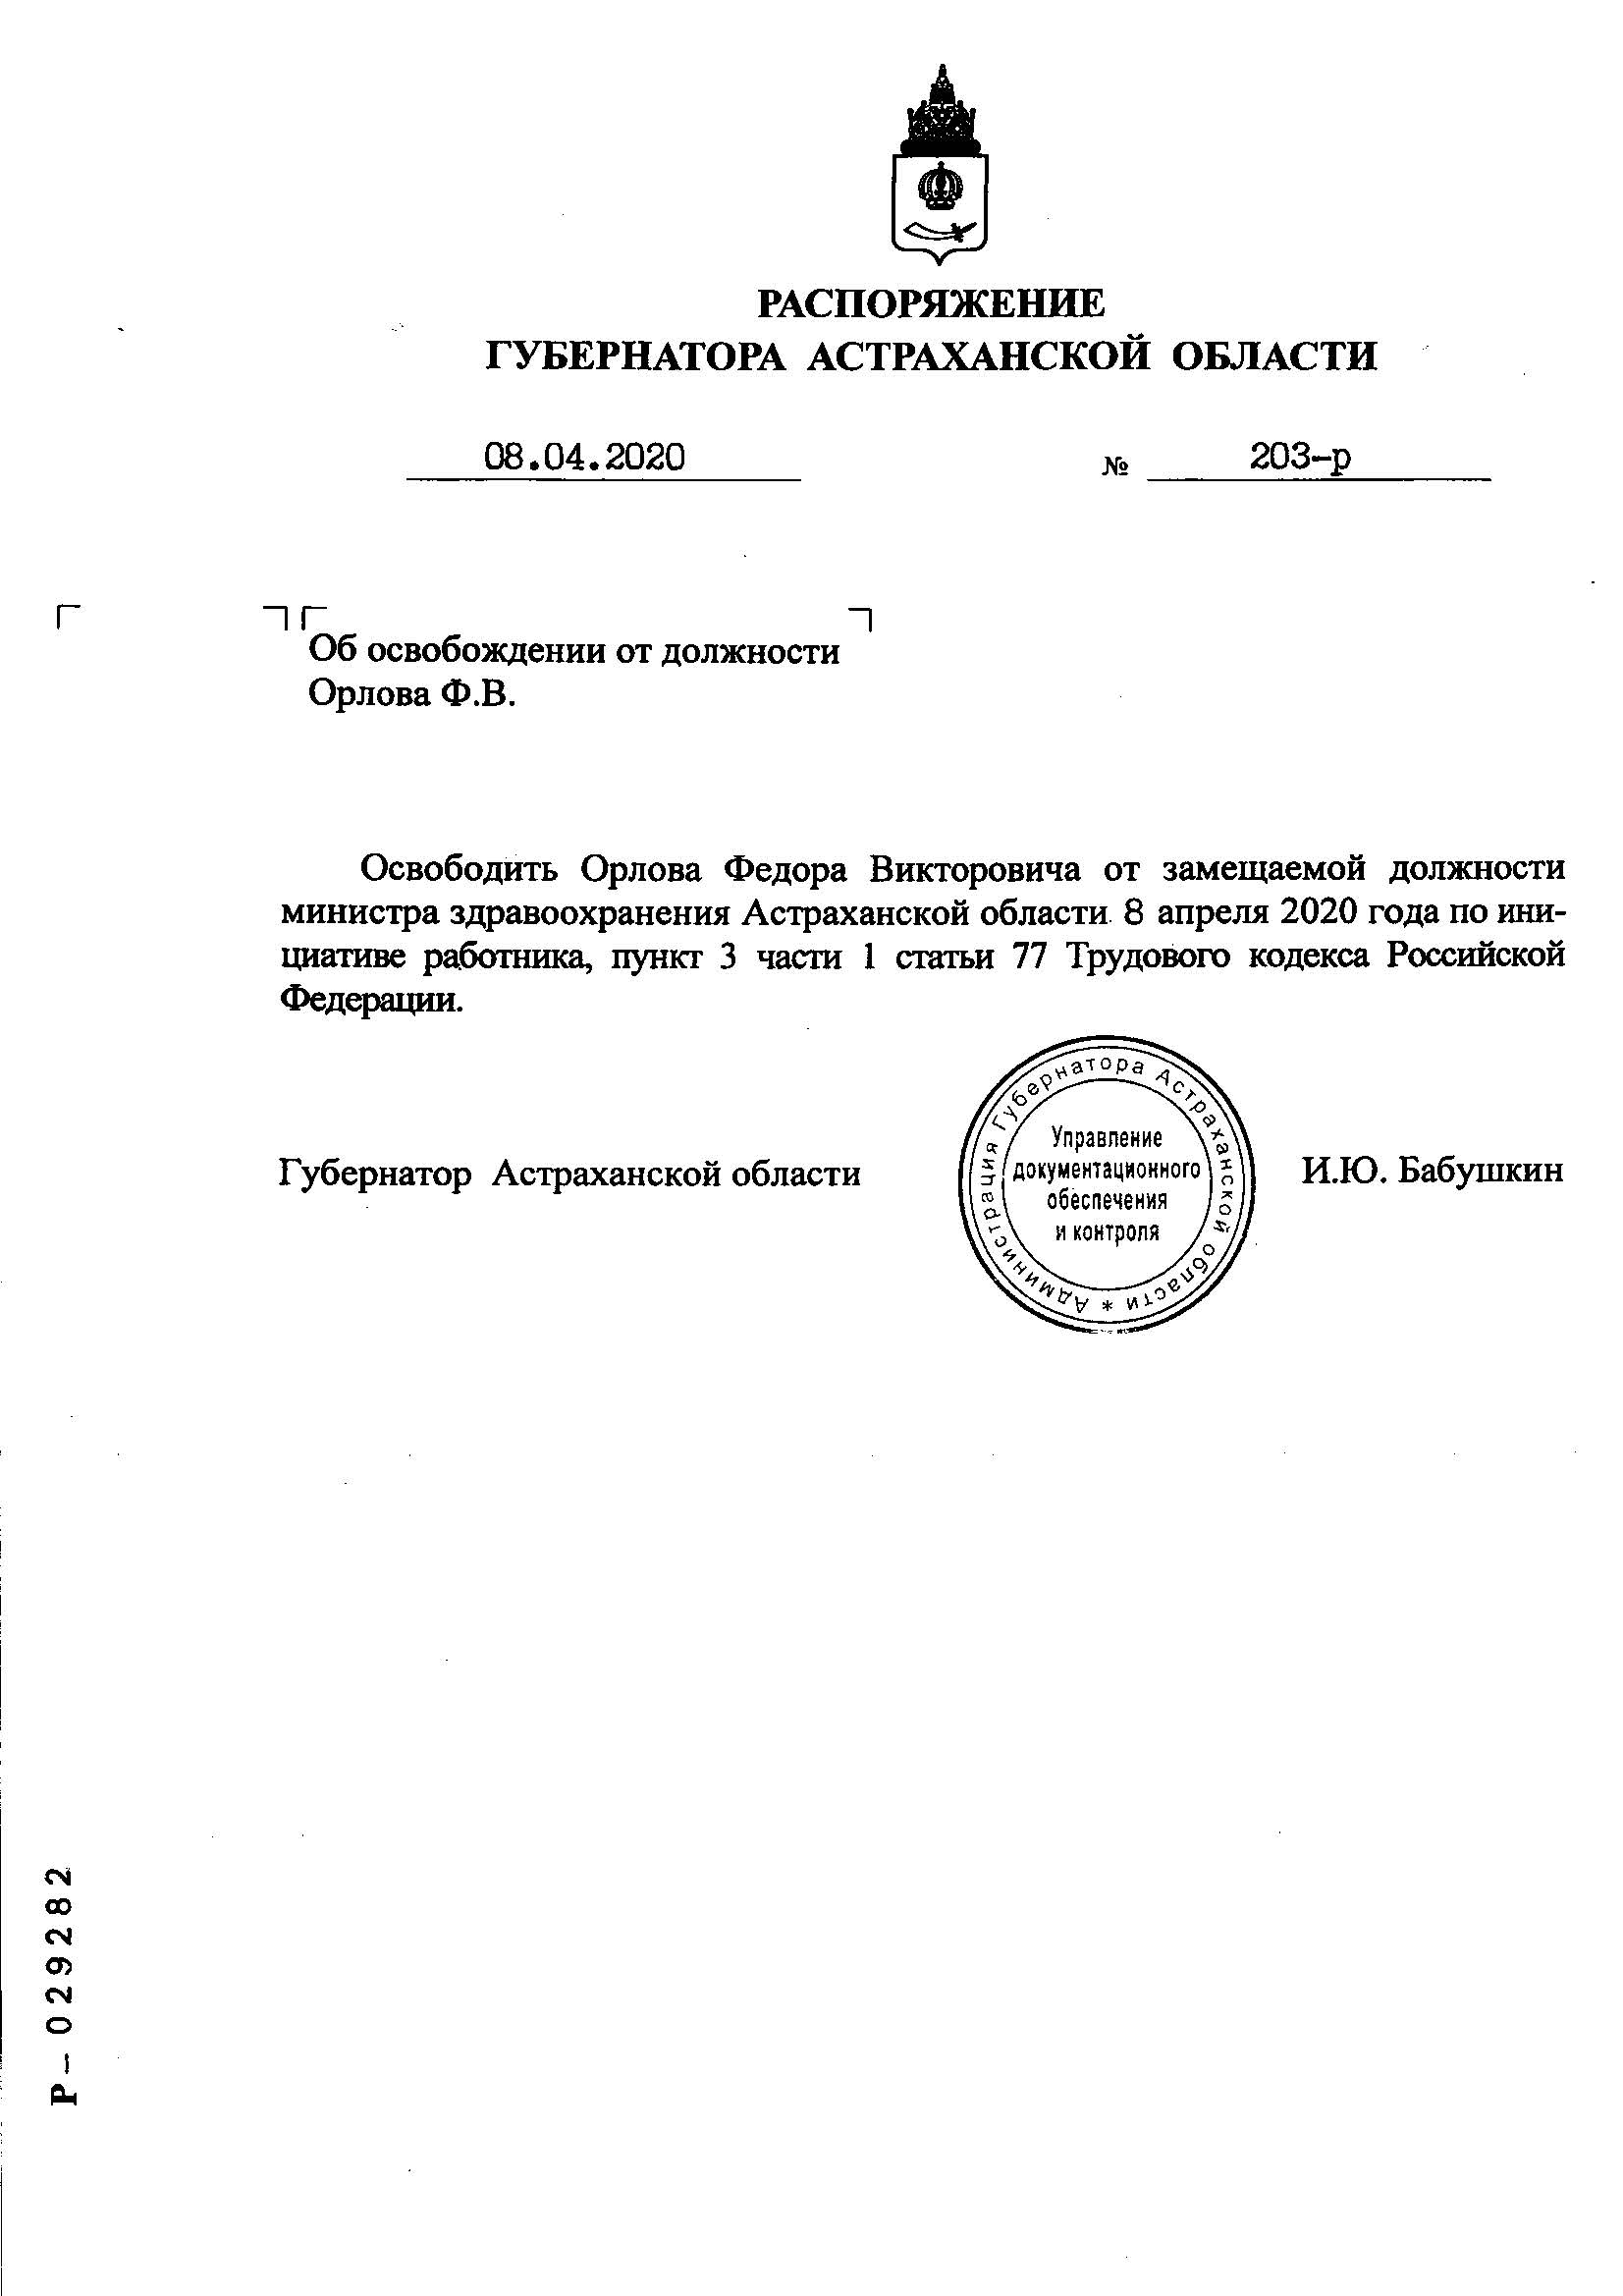 jhkjdedjkmytybt Опубликовано распоряжение губернатора об освобождении от должности министра здравоохранения